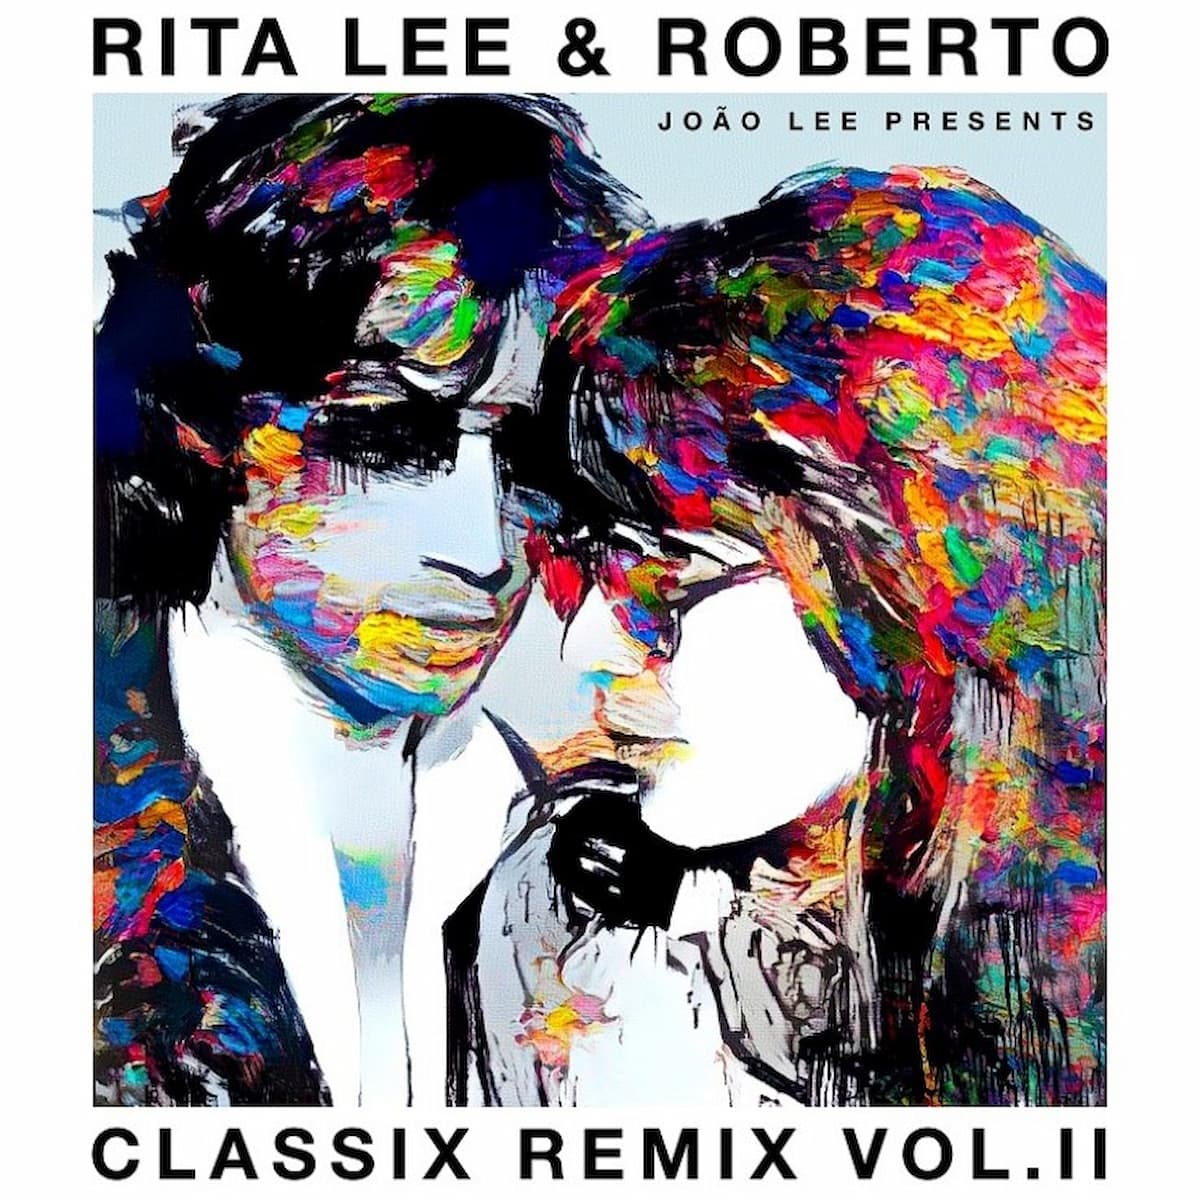 "Classix Remix vol. 2”: confira releituras da obra de Rita Lee